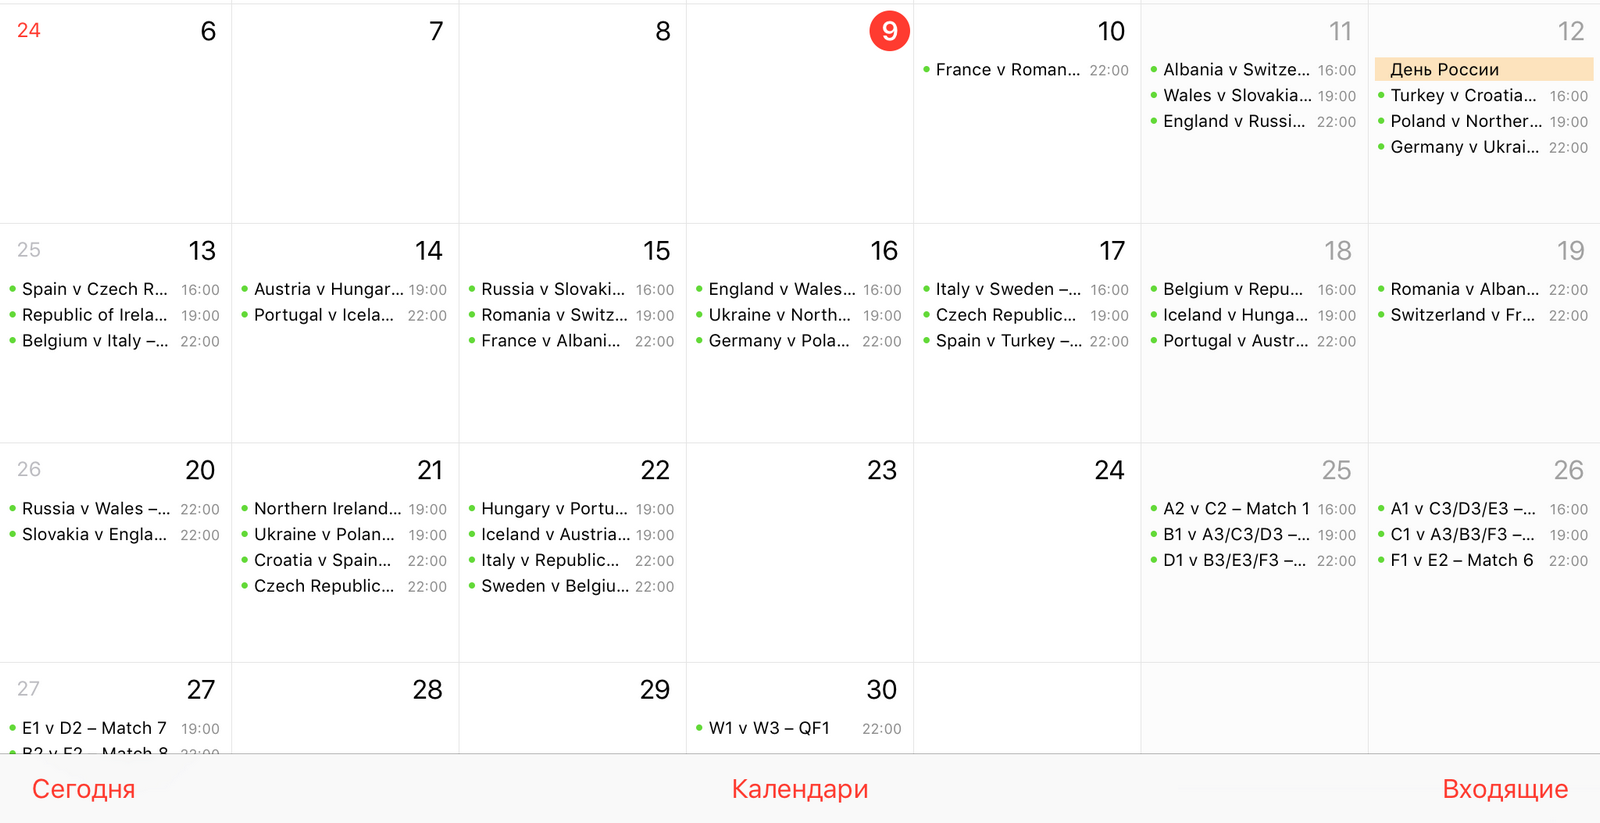 Как добавить расписание матчей Евро-2016 в календарь вашего iPhone